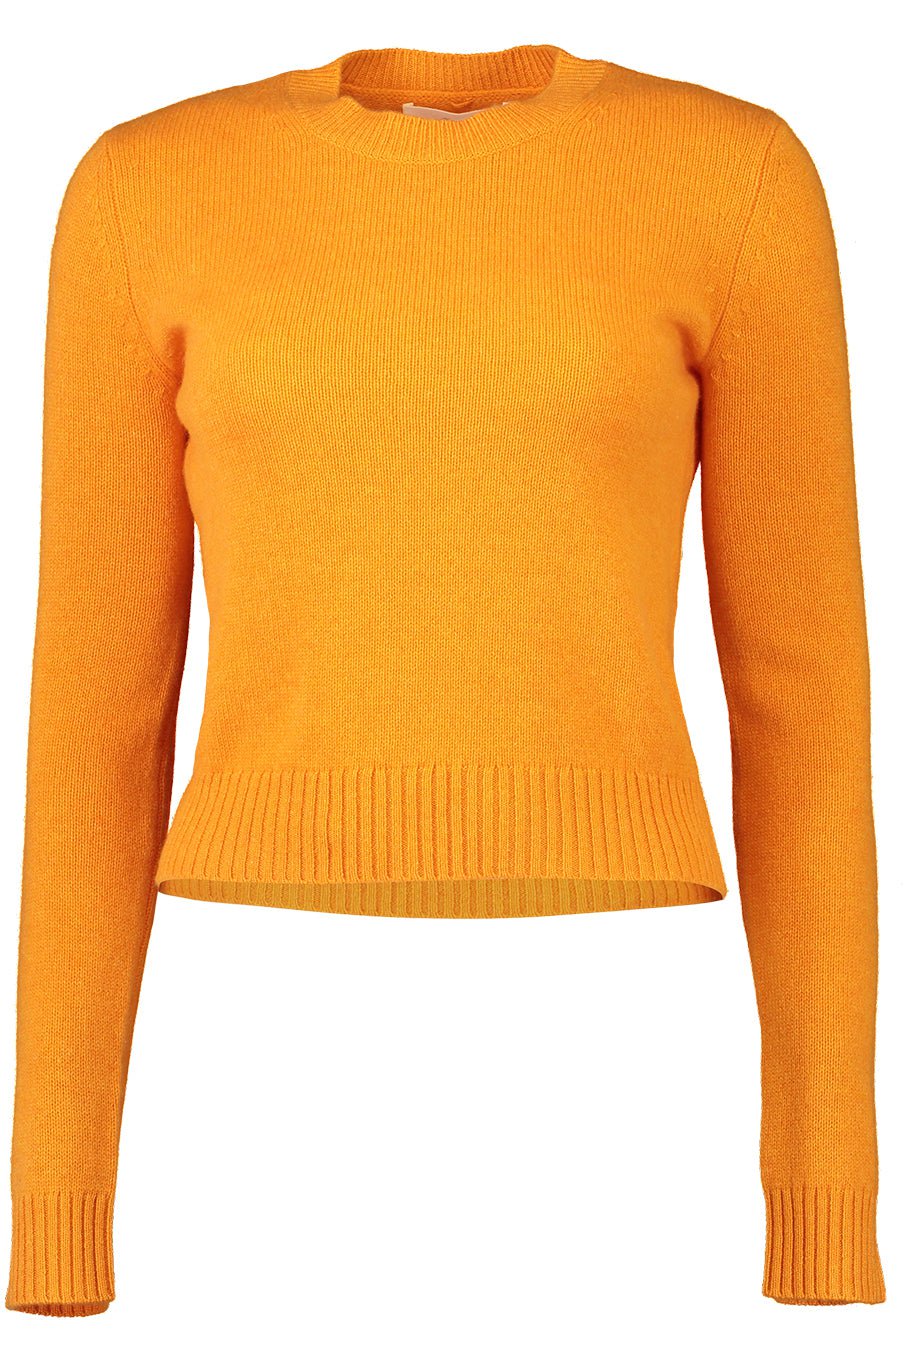 LISA YANG-Mable Sweater - Apricot-